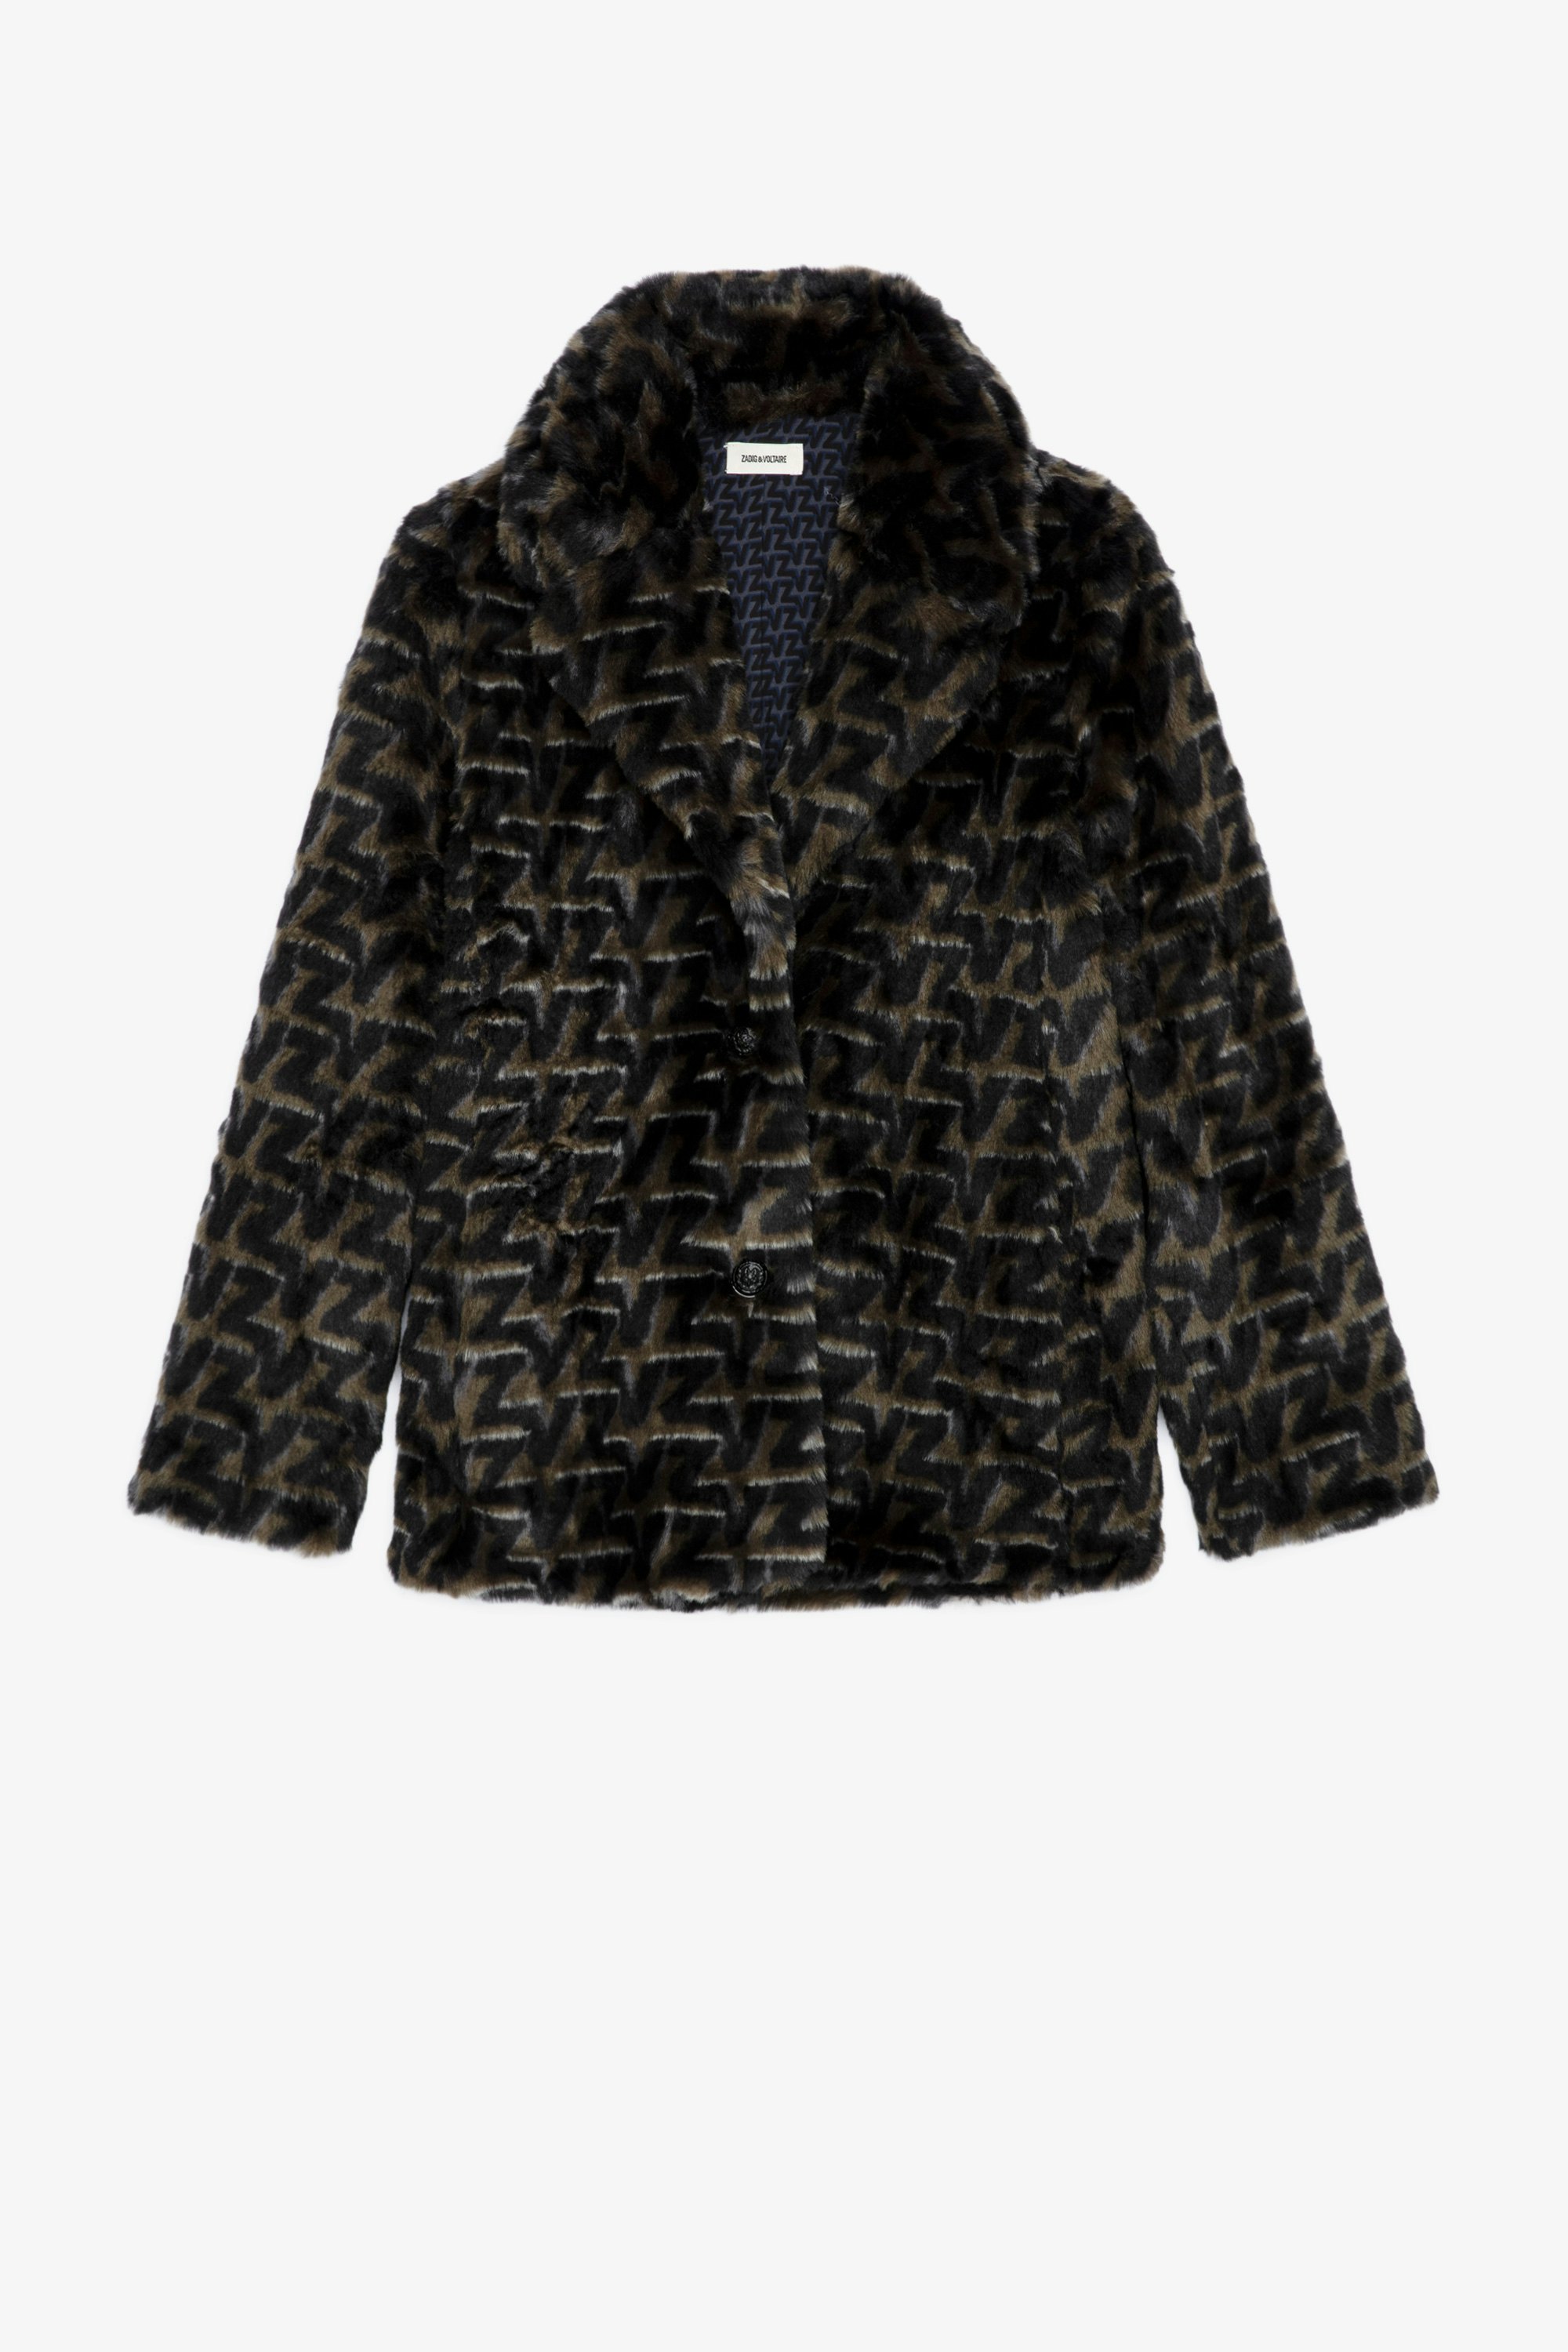 Fera Coat Women's faux fur coat with ZV monogram